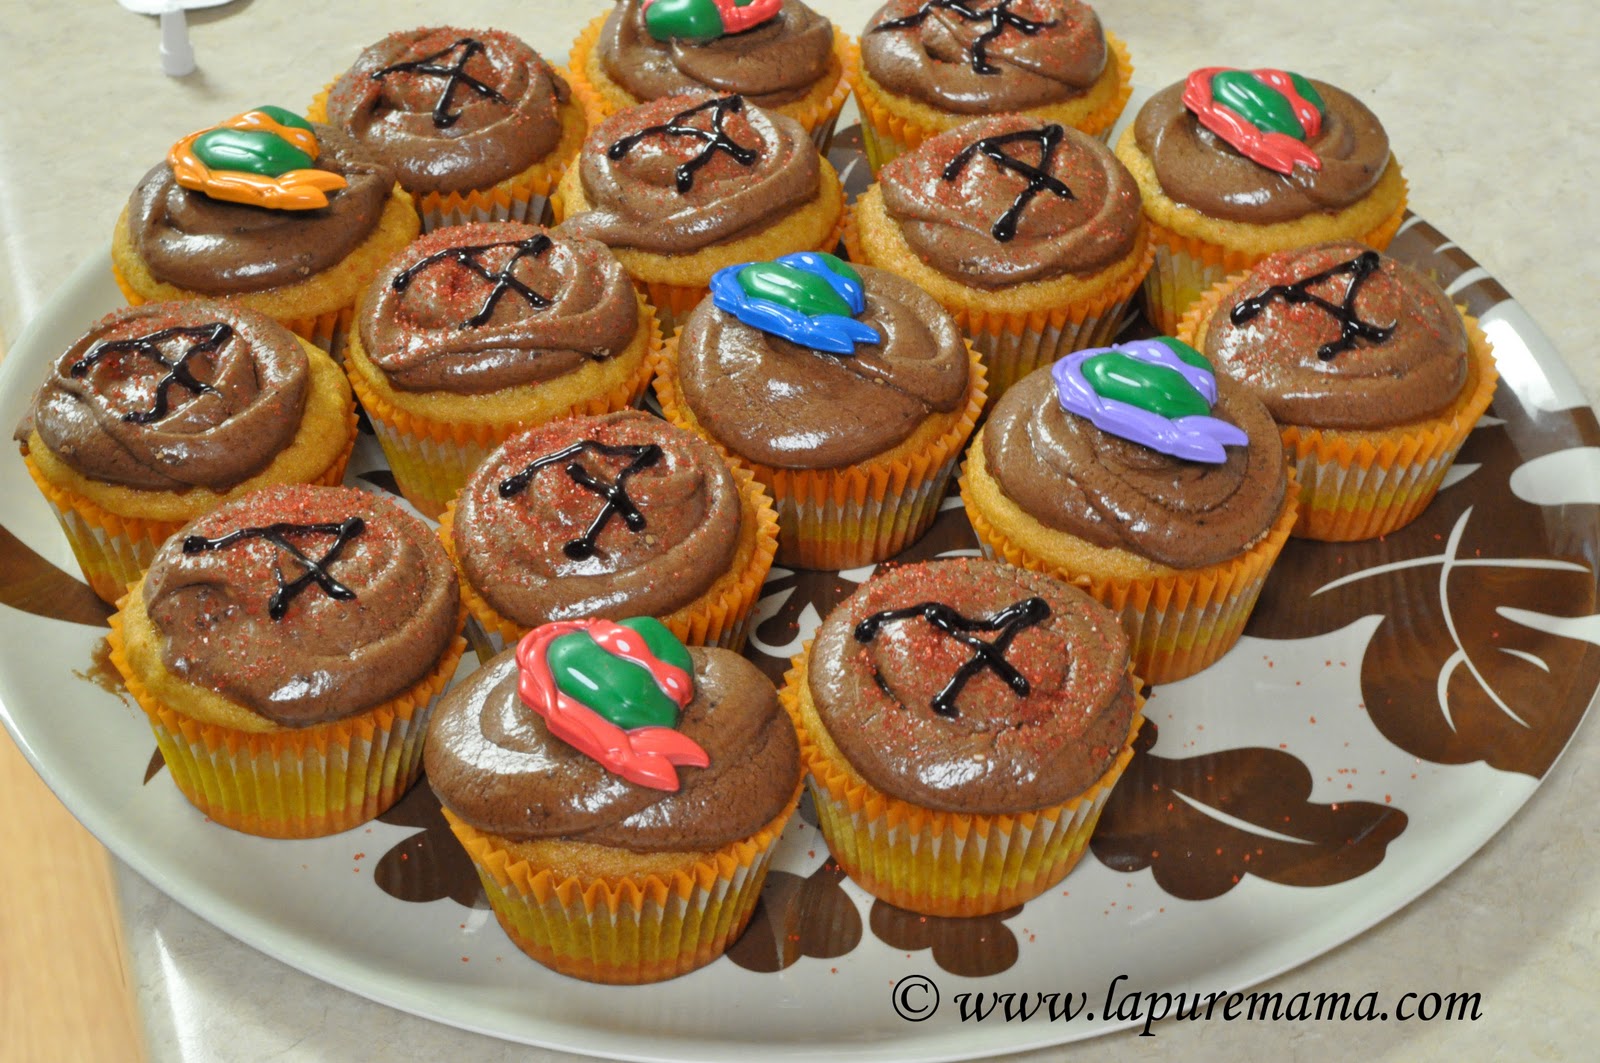 http://2.bp.blogspot.com/_zjcEYsqMKgM/TUc8vITl9WI/AAAAAAAADEM/3CZRnzV4BpM/s1600/perfect+cupcakes+copy.jpg